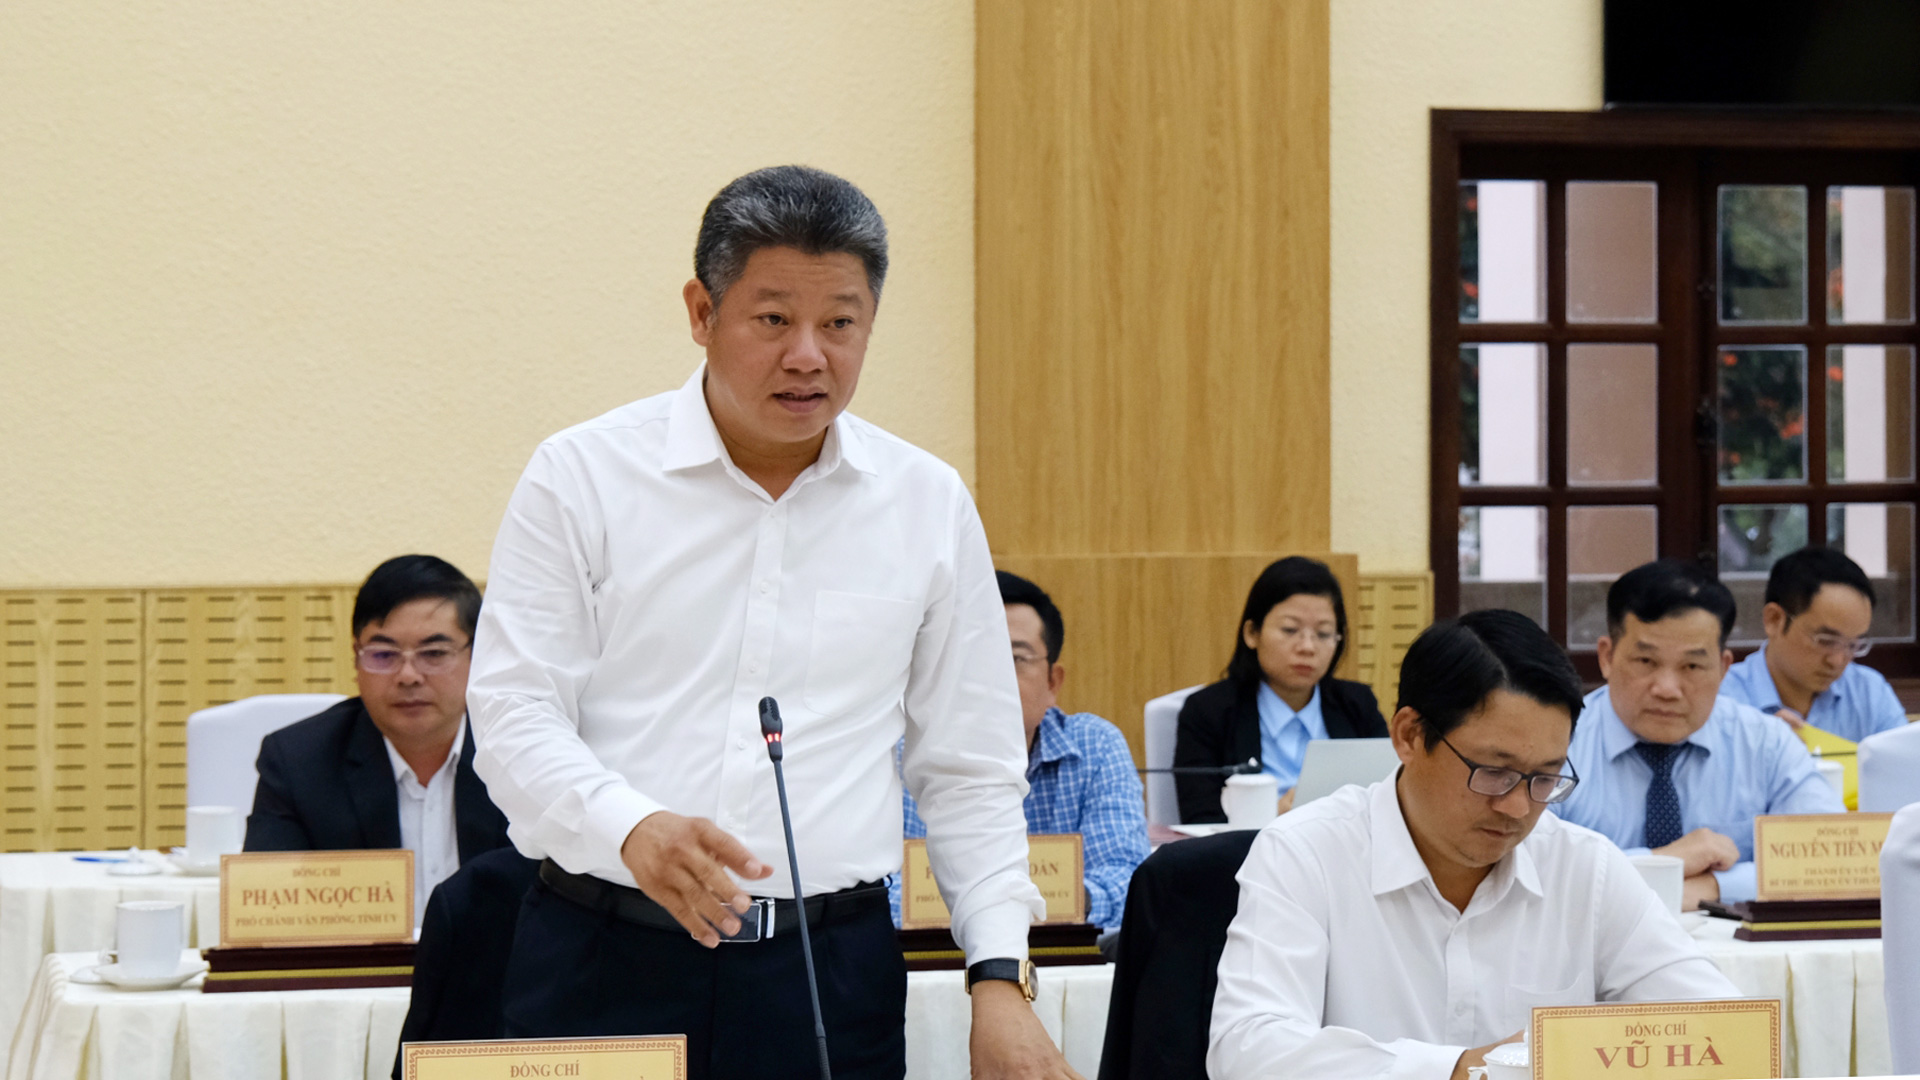 Đồng chí Nguyễn Mạnh Quyền – Phó Chủ tịch UBND thành phố Hà Nội thông tin sơ lược tình hình phát triển kinh tế - xã hội của Thủ đô